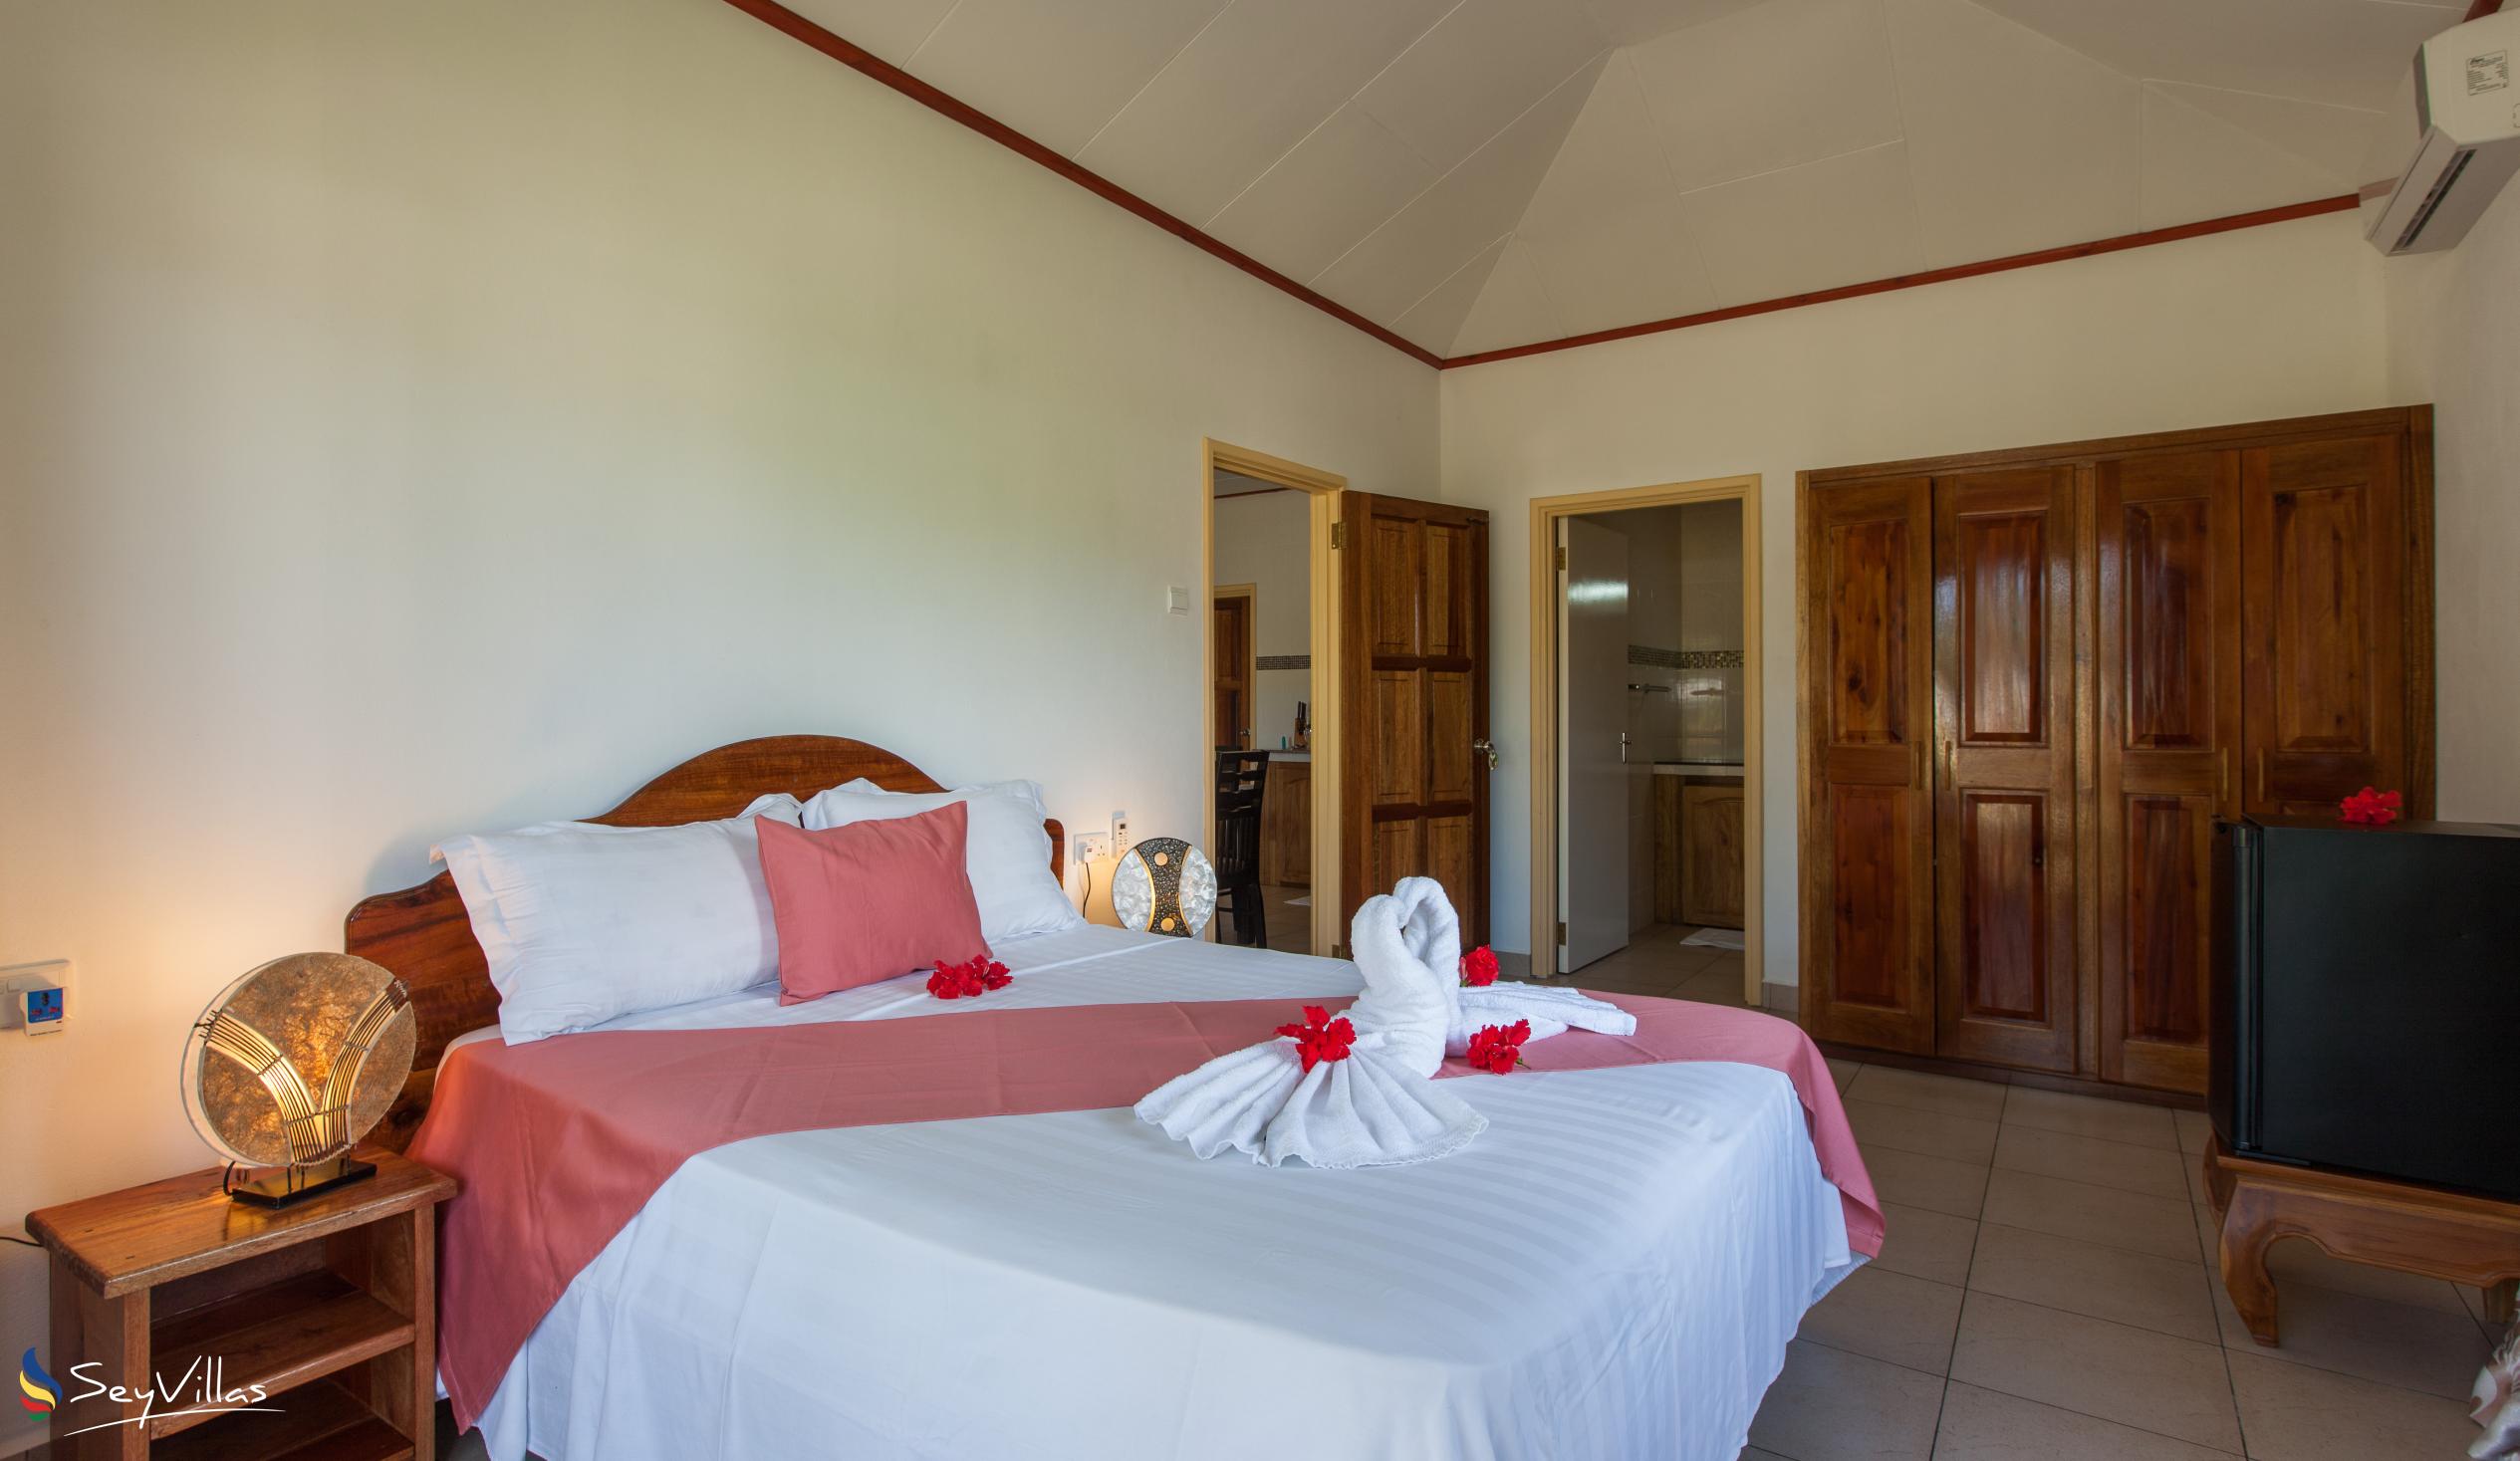 Photo 62: Hostellerie La Digue - 2-Bedroom Chalet - La Digue (Seychelles)